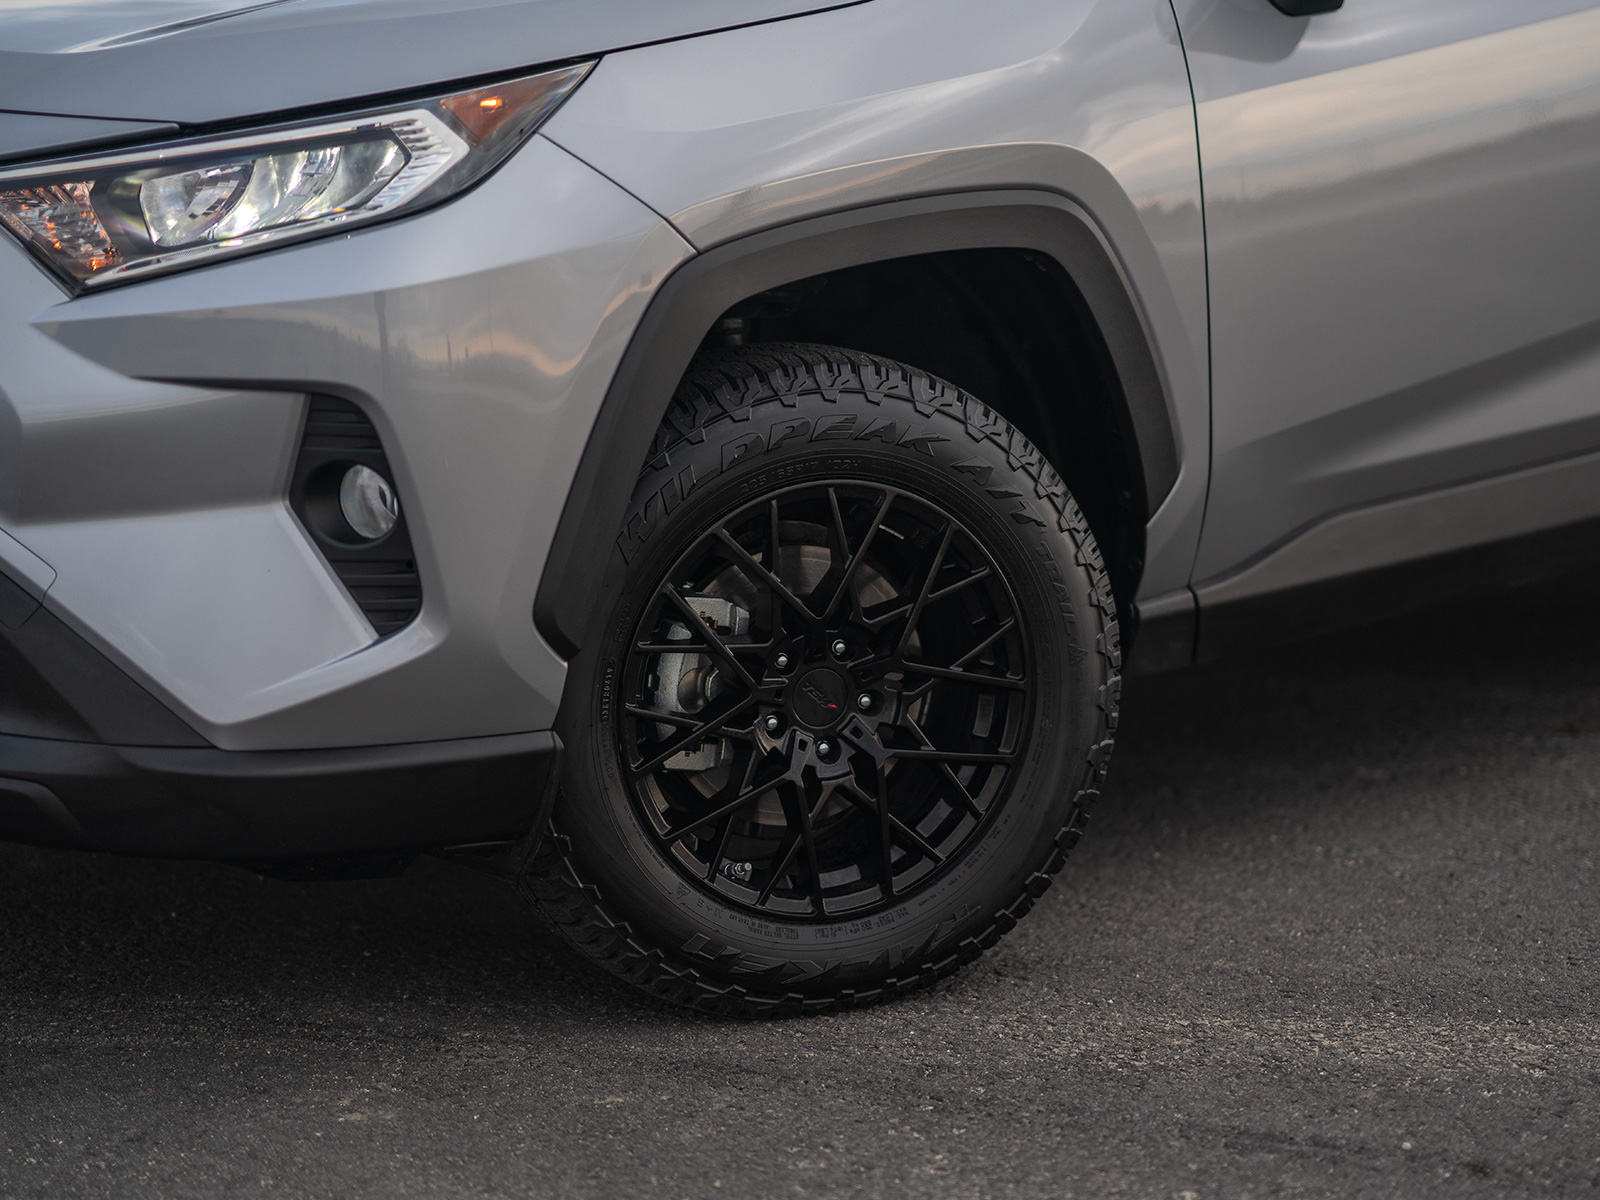 wildpeak all terrain tyres on a new Toyota RAV4 on bitumen